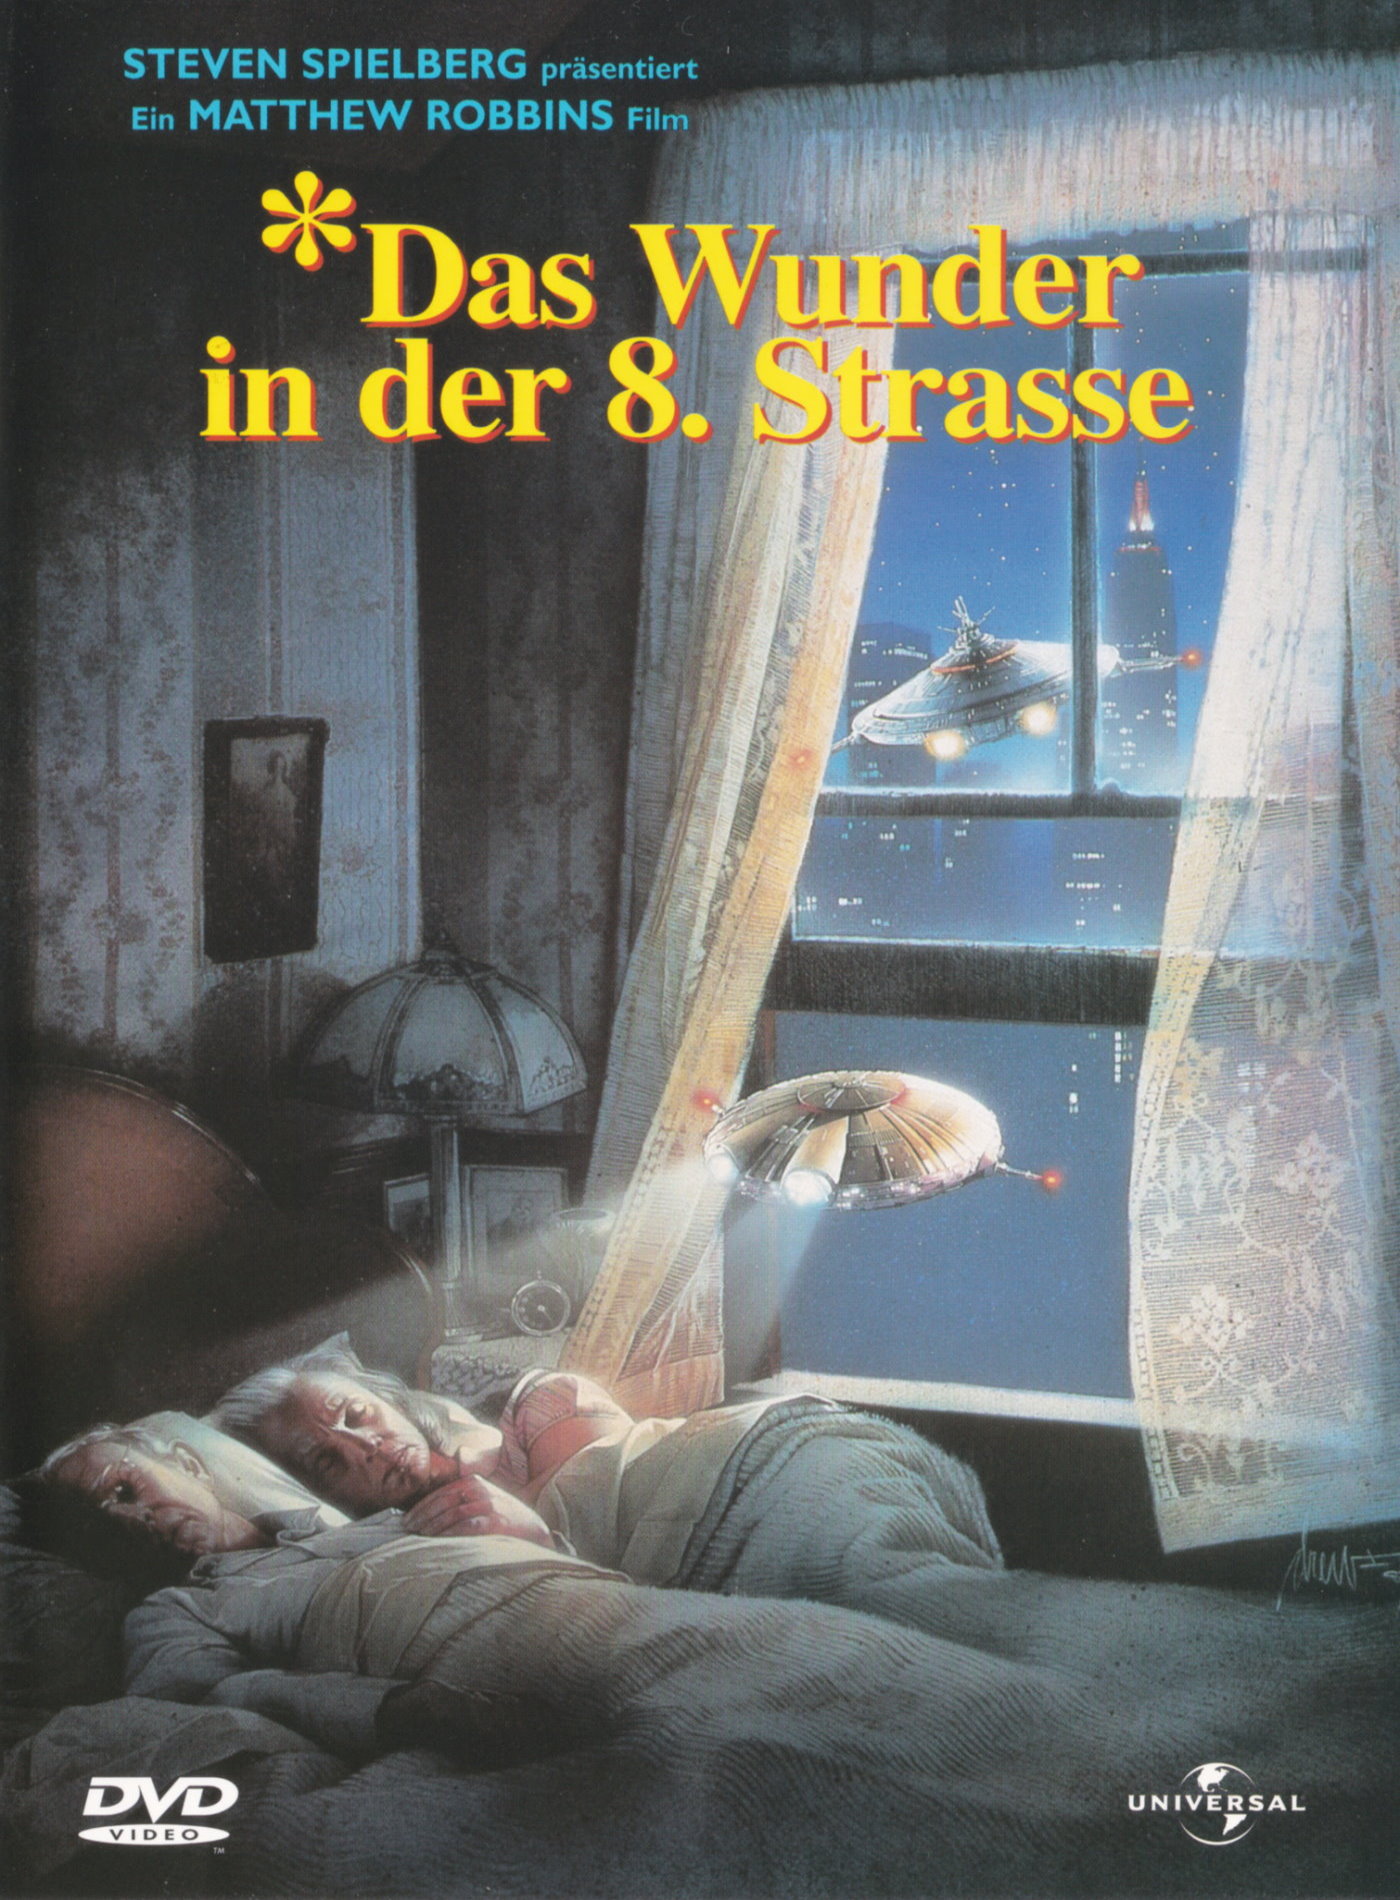 Cover - Das Wunder in der 8. Straße.jpg